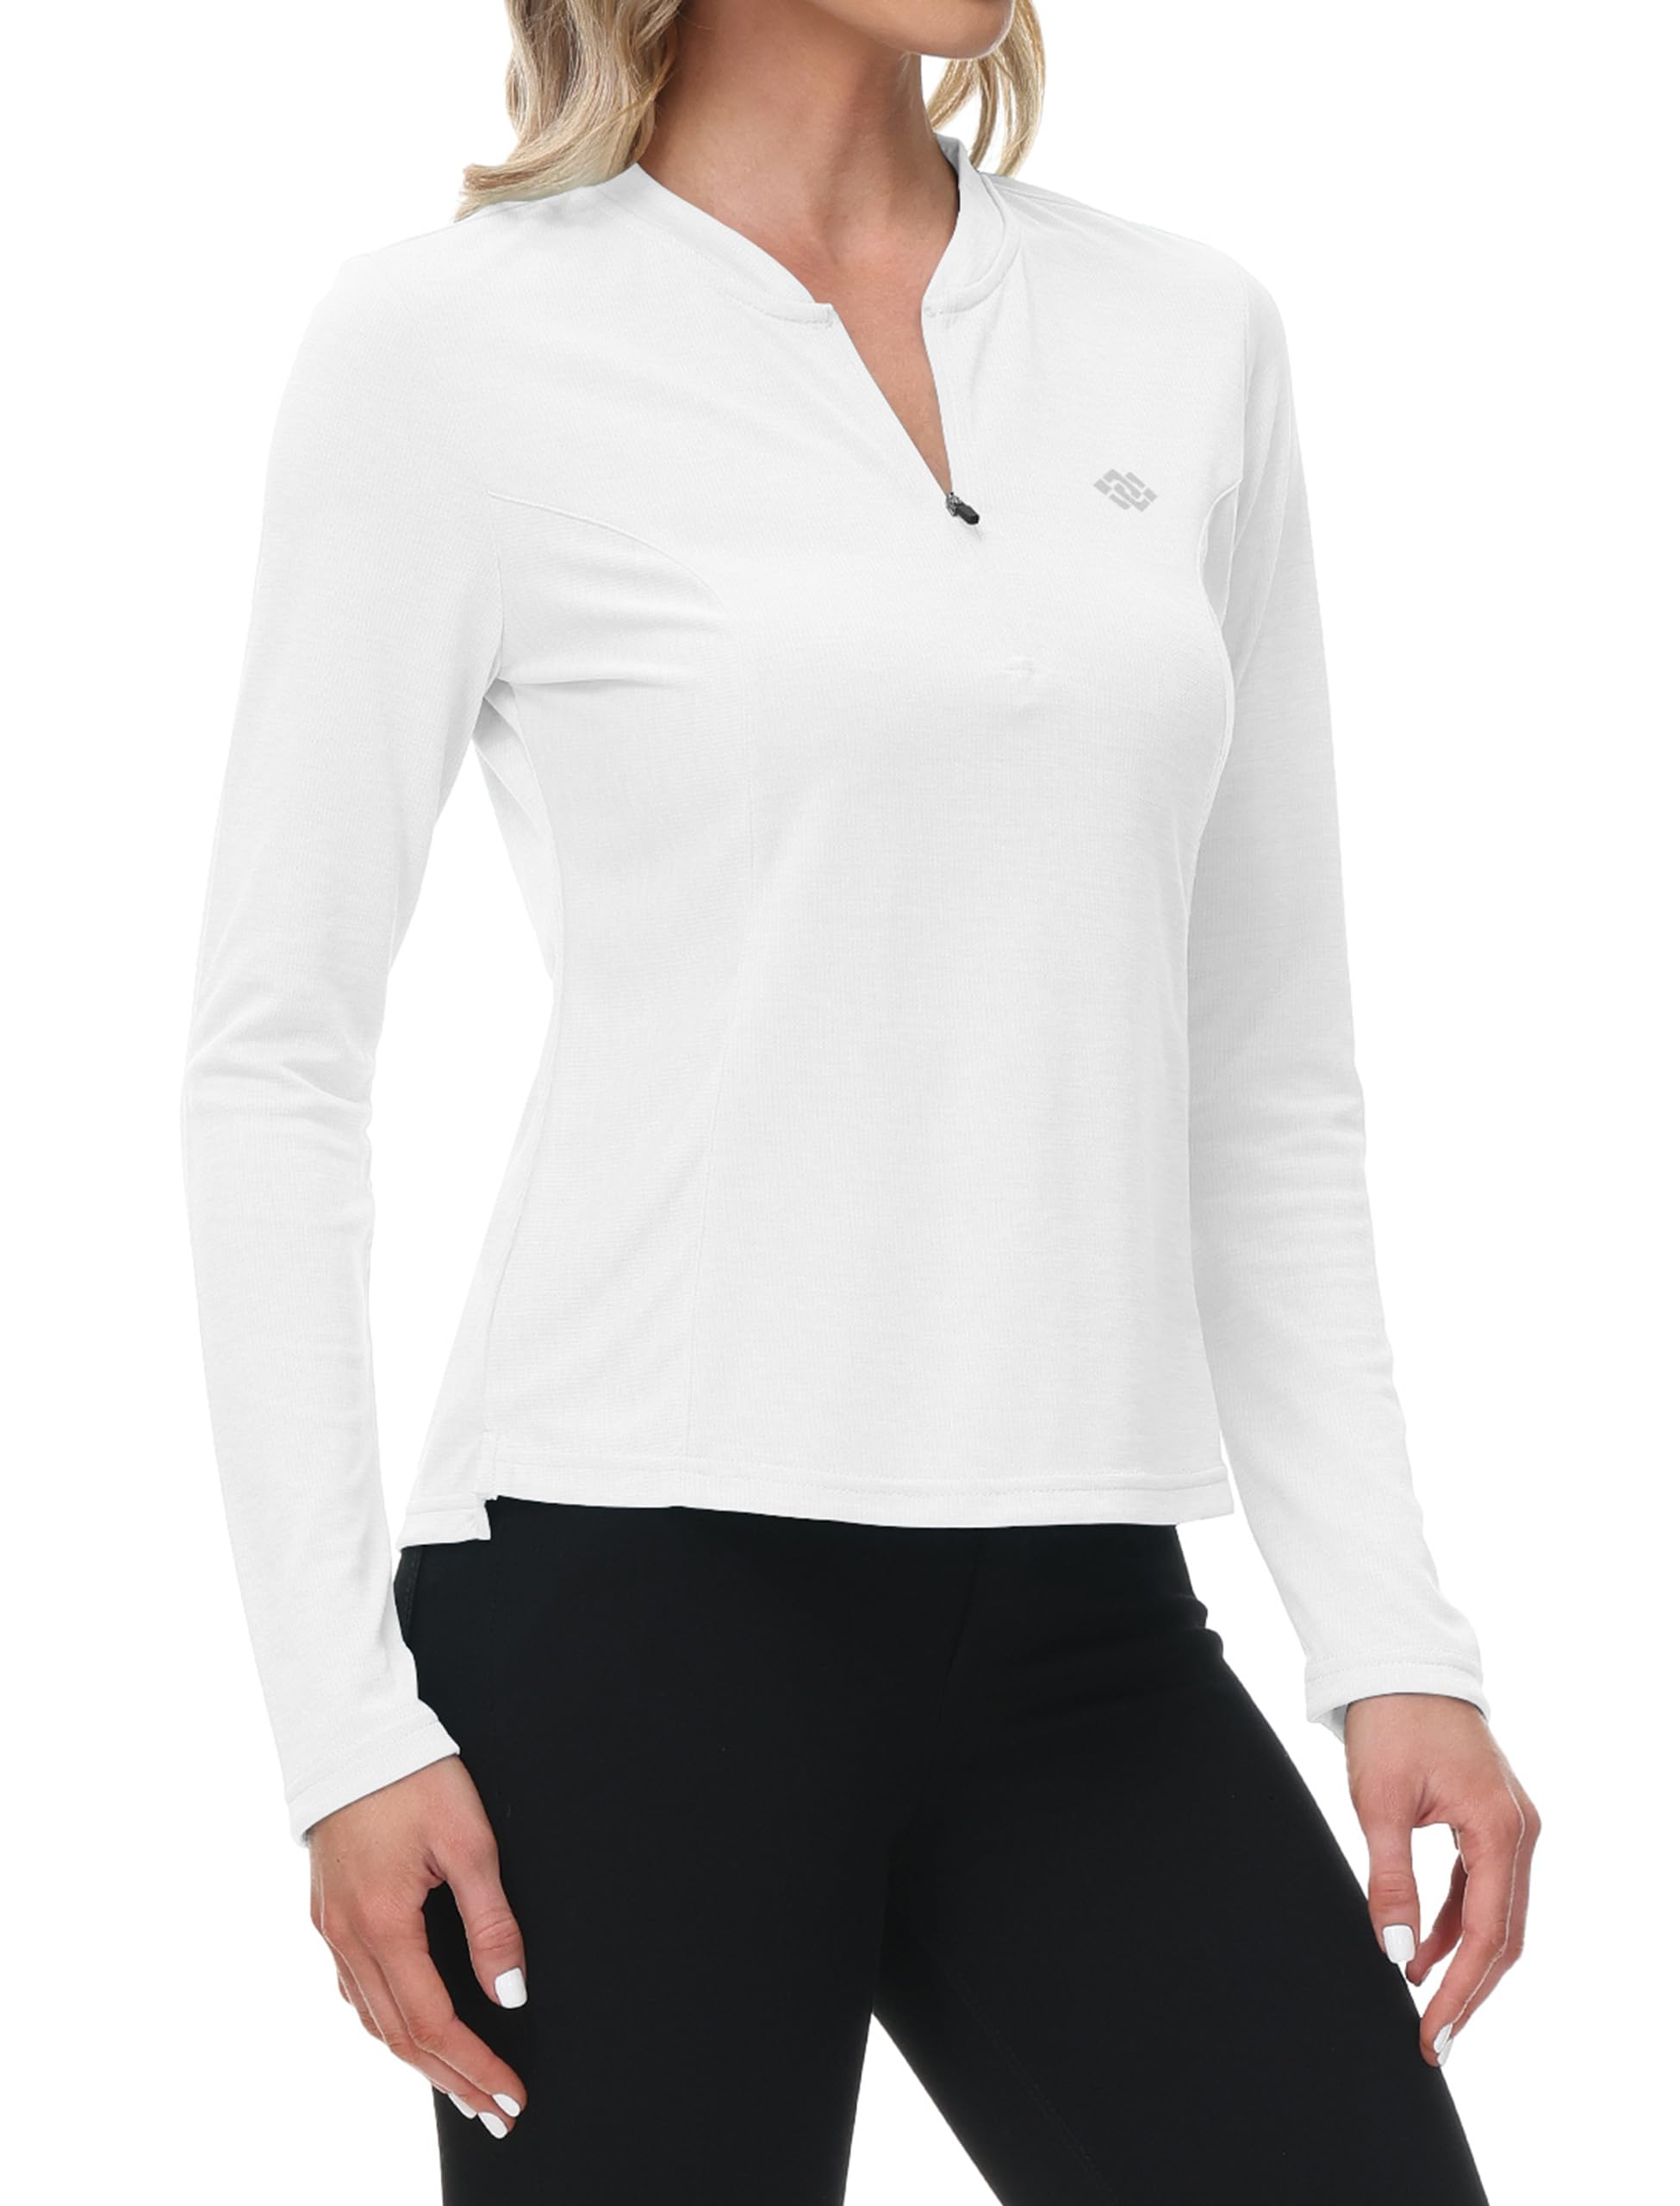 prix de gros MoFiz Shirts de Sport Femme Manches Longues Chemise de Golf Séchage Rapide Fitness Hauts avec Zippé TrkXUDpeG Boutique